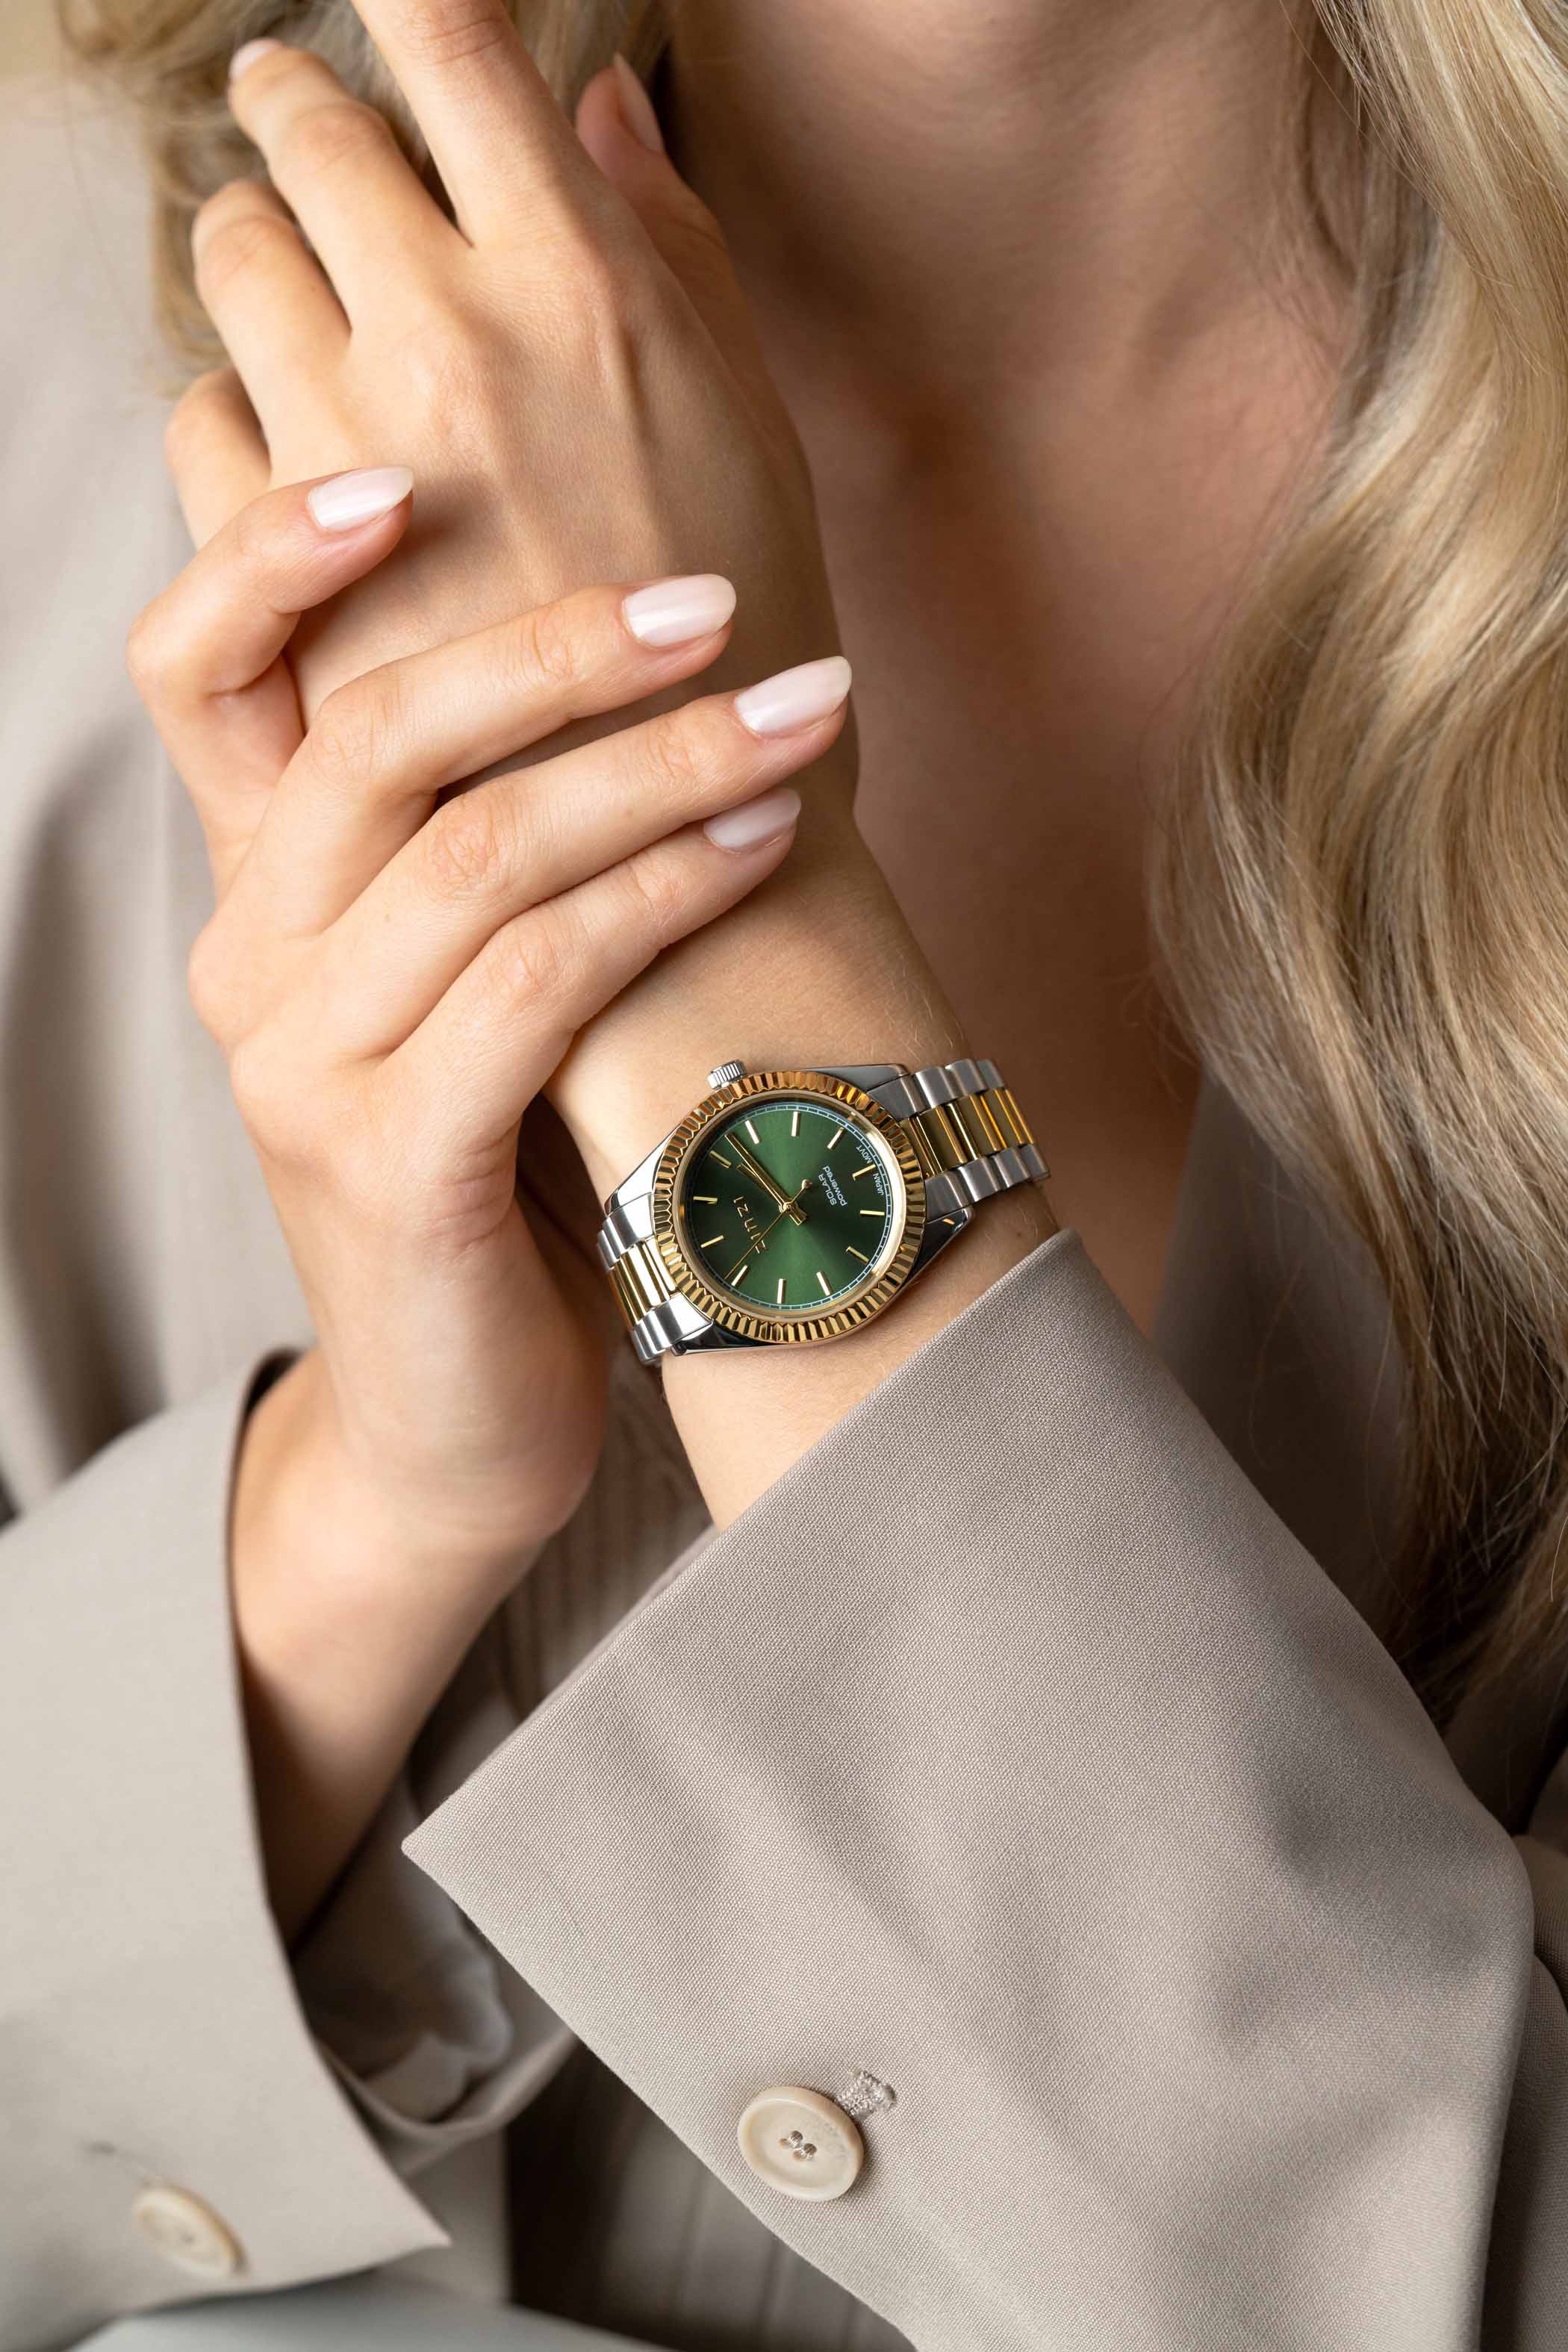 ZINZI Solaris horloge met groene wijzerplaat, stalen bicolor kast 35mm en stalen bicolor band met clip-sluiting. Het Japanse uurwerk loopt op zon- en kunstlicht ZIW2135
